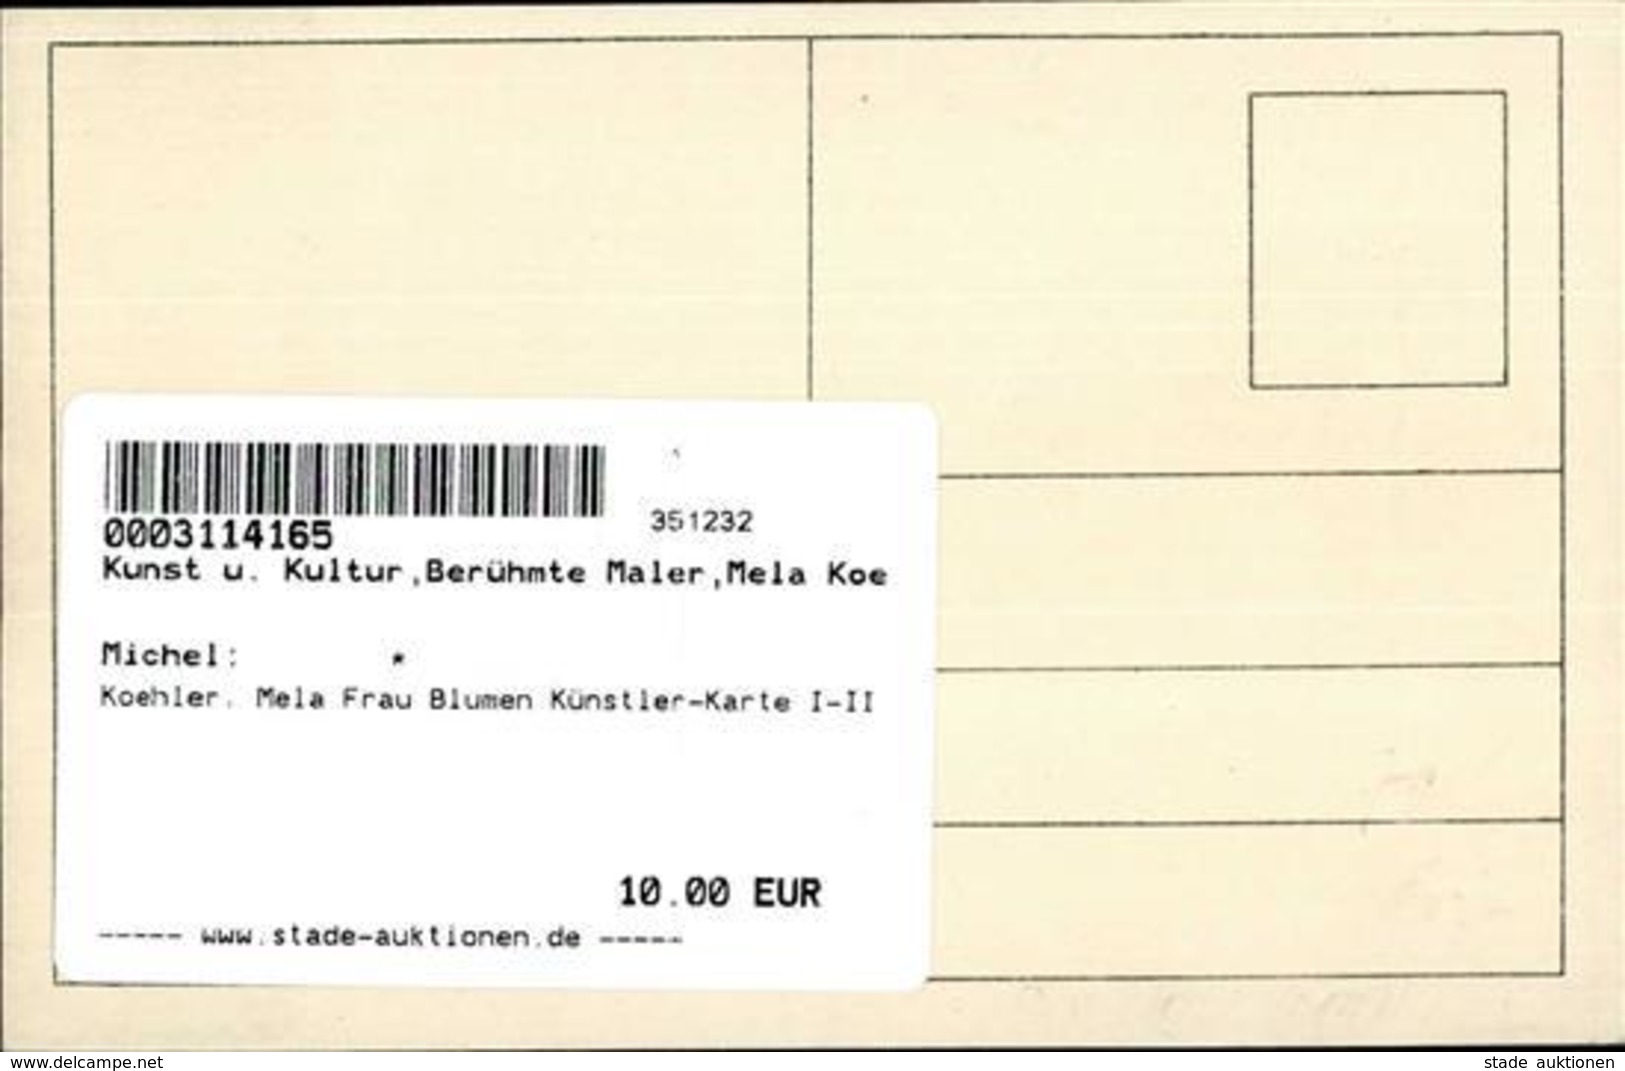 Koehler, Mela Frau Blumen Künstler-Karte I-II - Koehler, Mela